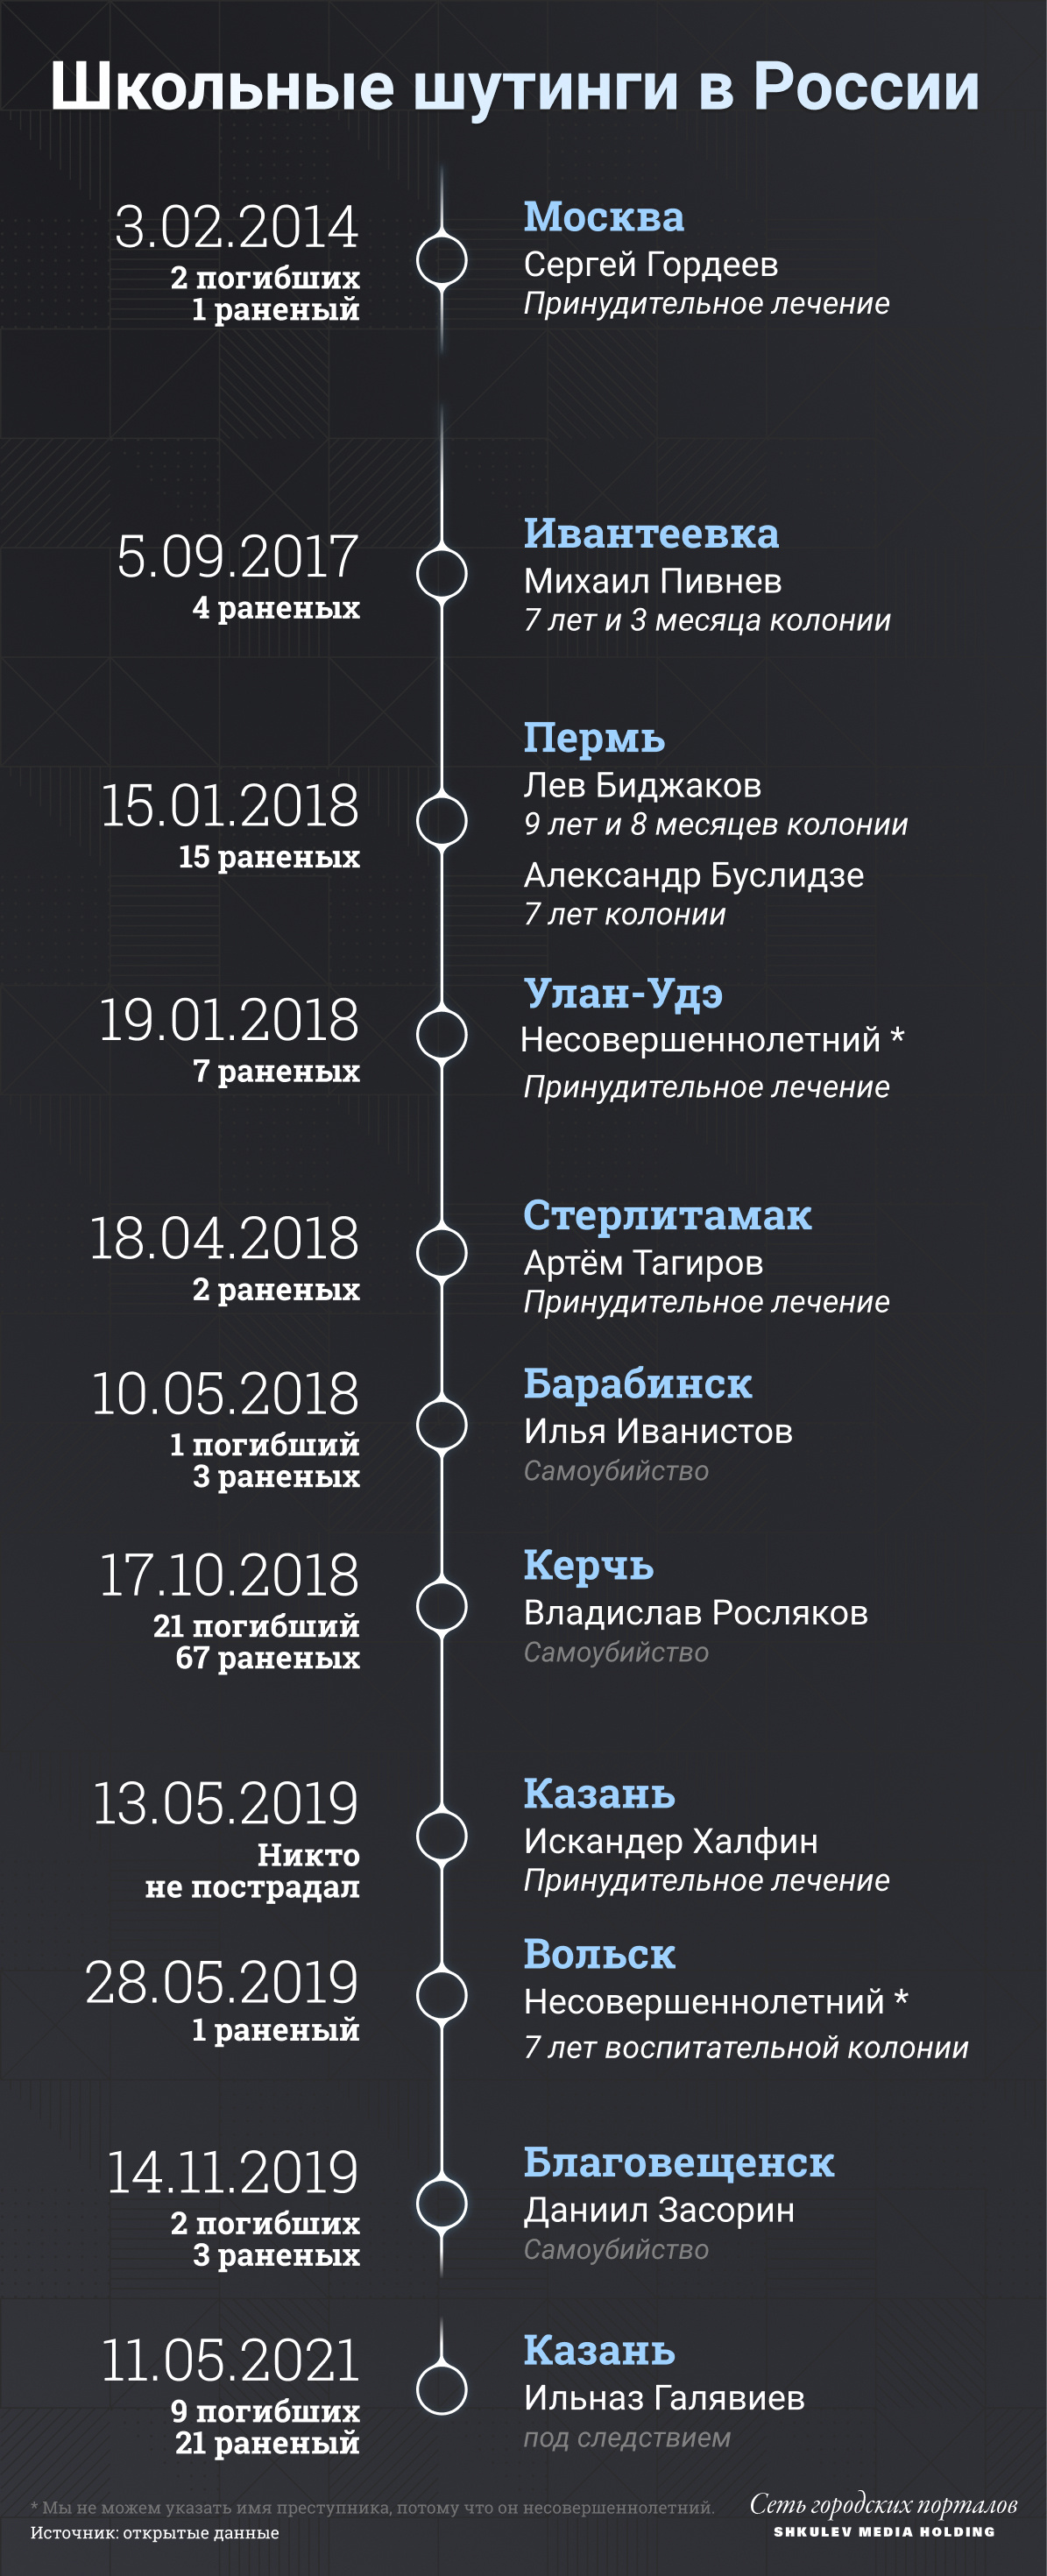 До 20 сентября 2021 года в России насчитывали 11 аналогичных нападений на учебные заведения: вот чем они закончились